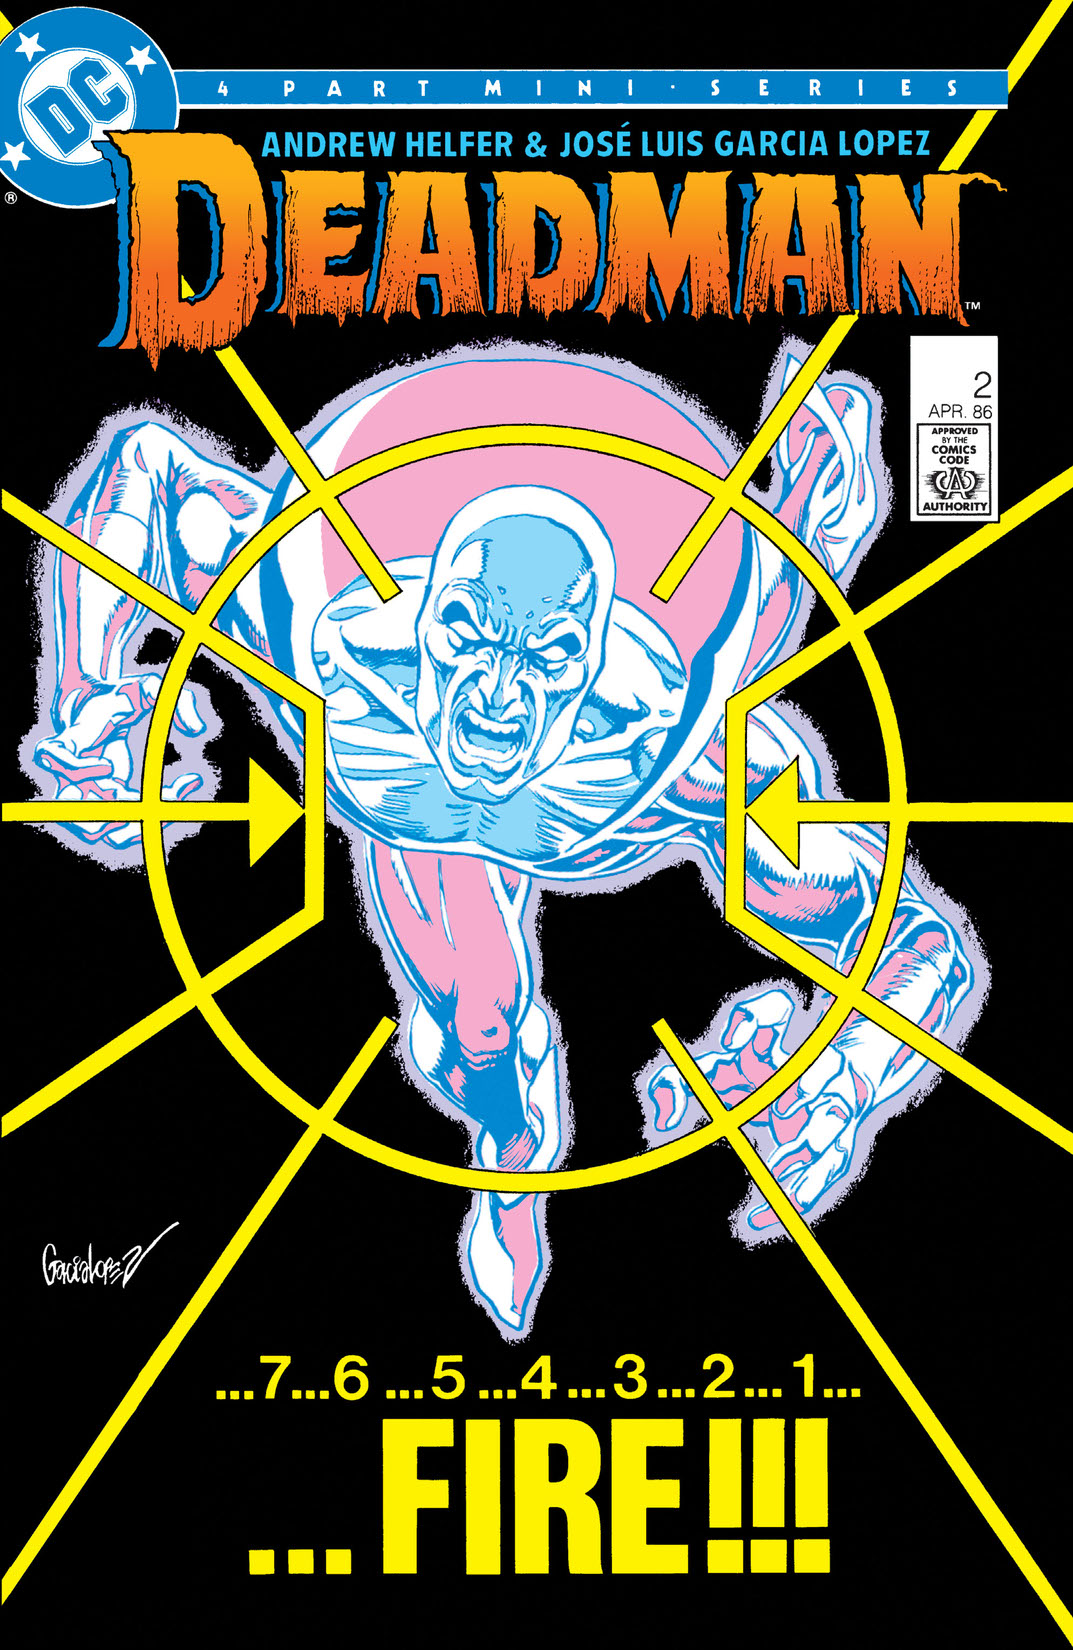 Deadman (1986-) #2 preview images